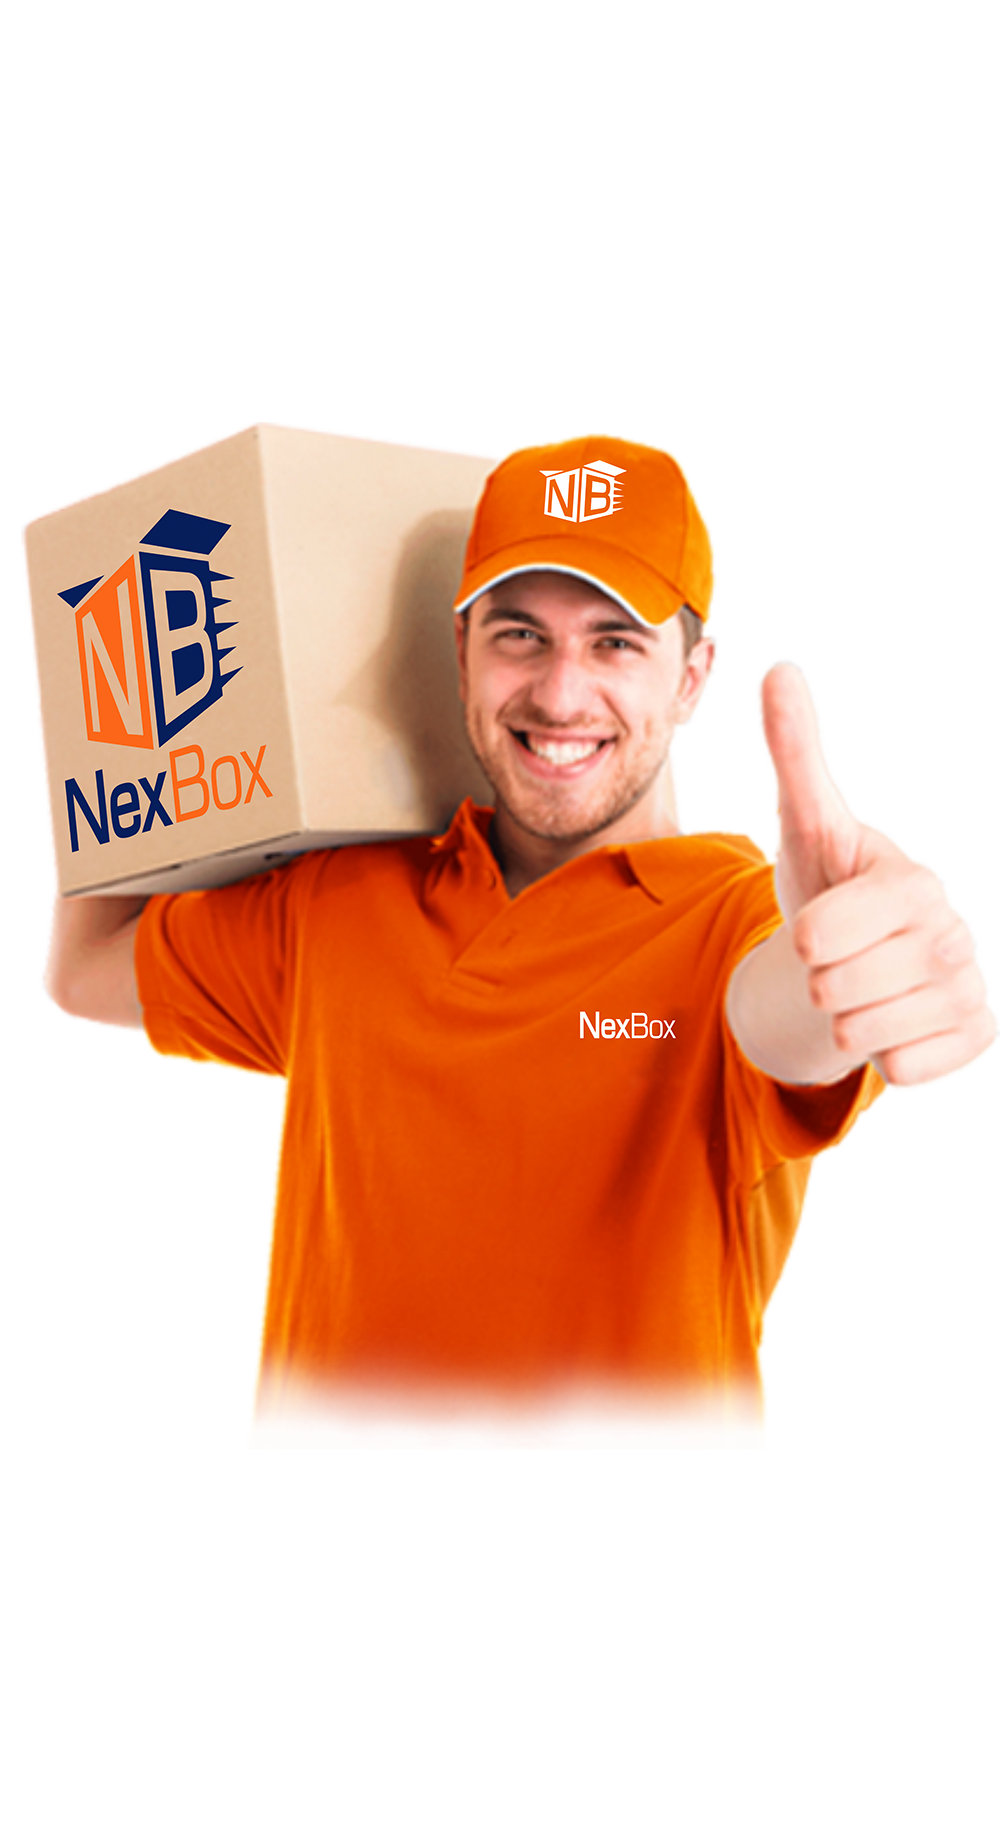 nexbox mobile